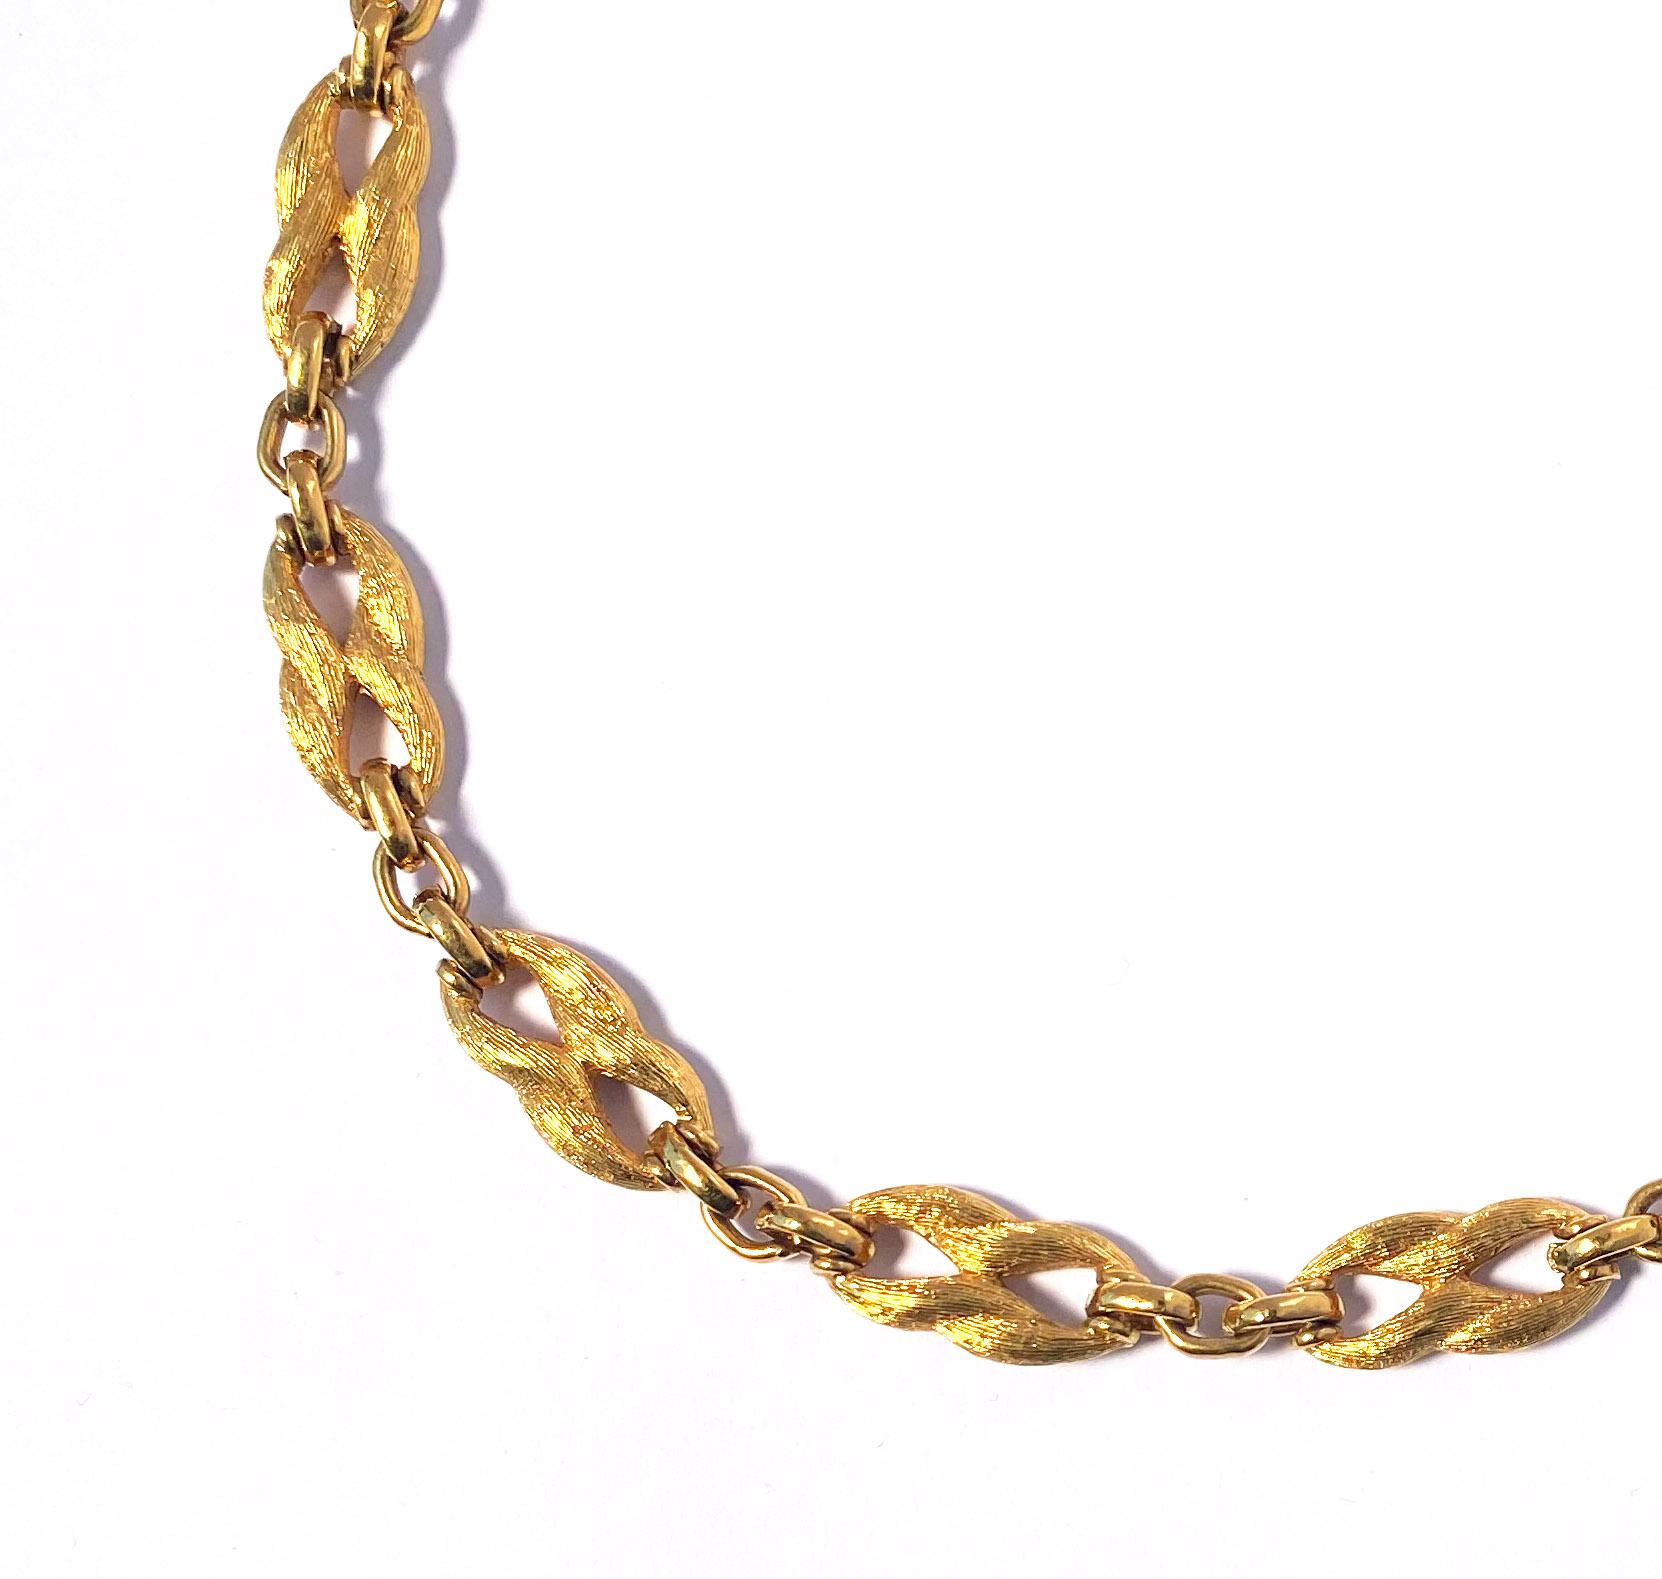 Collar de cadena tipo gargantilla Christian Dior vintage de los años 60, chapado en oro.  Este collar presenta elegantes eslabones en forma de figura de ocho con una exclusiva textura ondulada forrada, que les confiere un lustroso acabado semimate. 